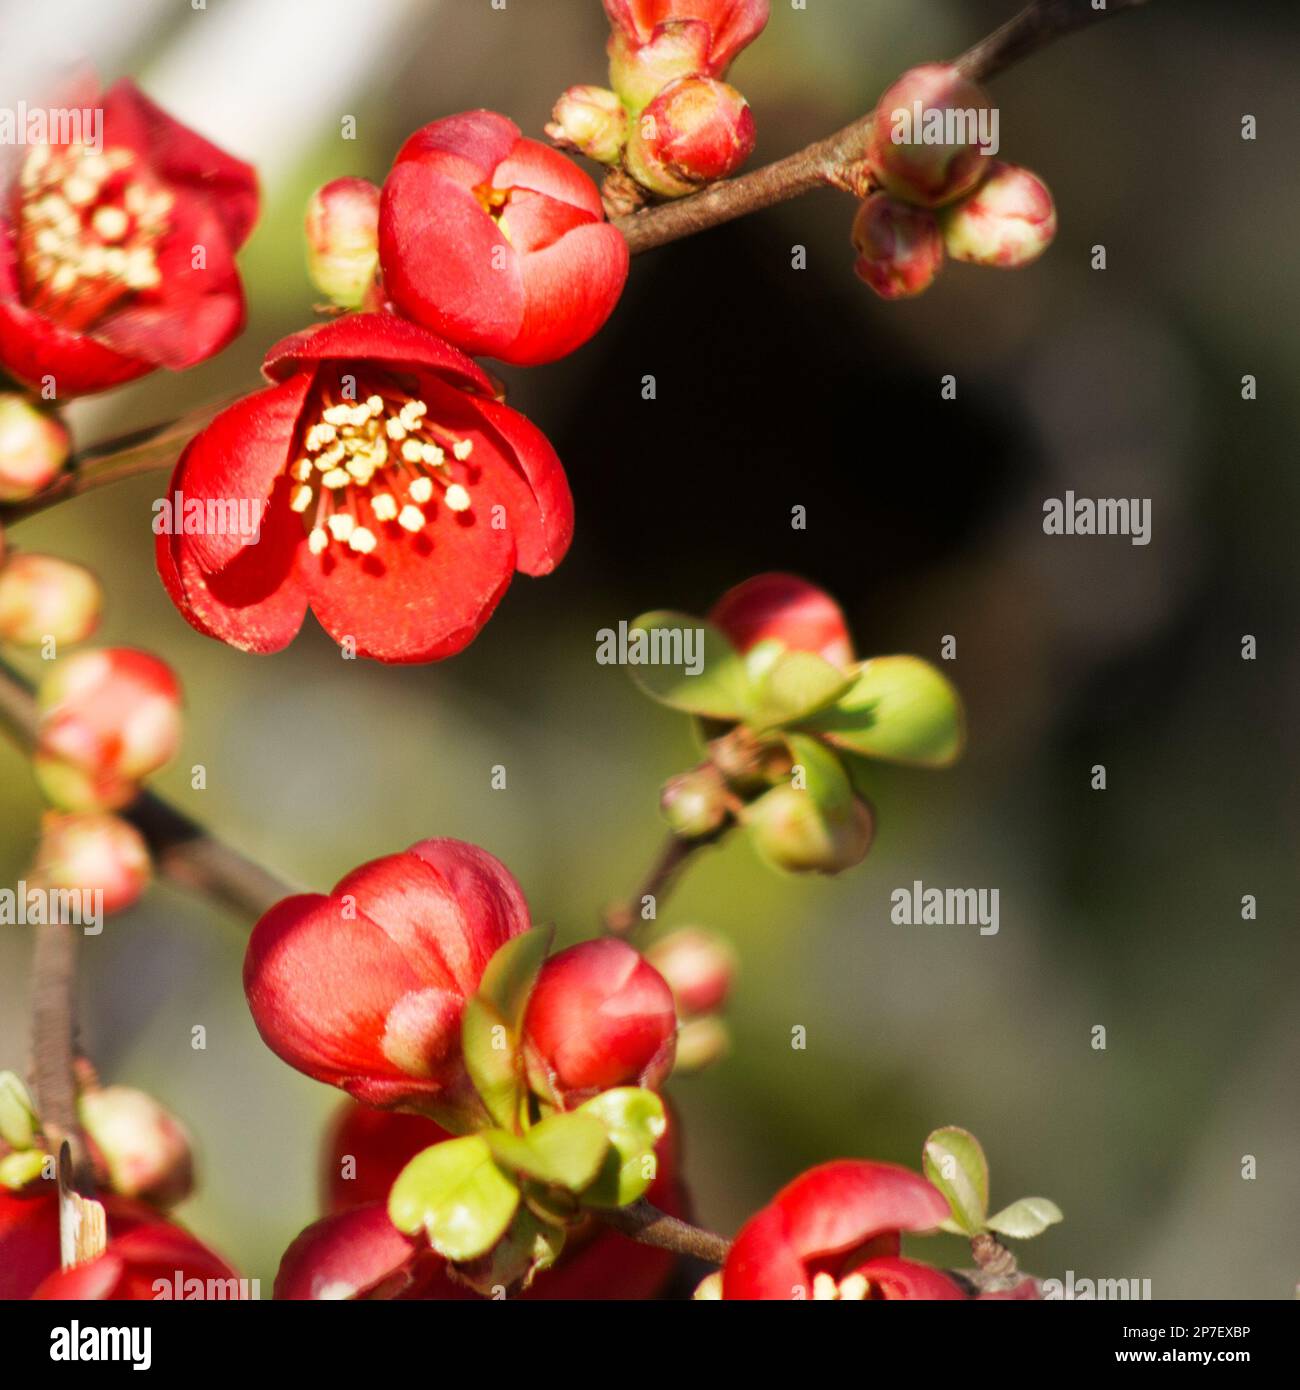 Ein Teleobjektiv-Foto von roten rosenartigen Blumen mit gelben Stühlen. Die Blumen befinden sich hauptsächlich in der linken Hälfte des Bildes. Der Hintergrund ist Sie Stockfoto